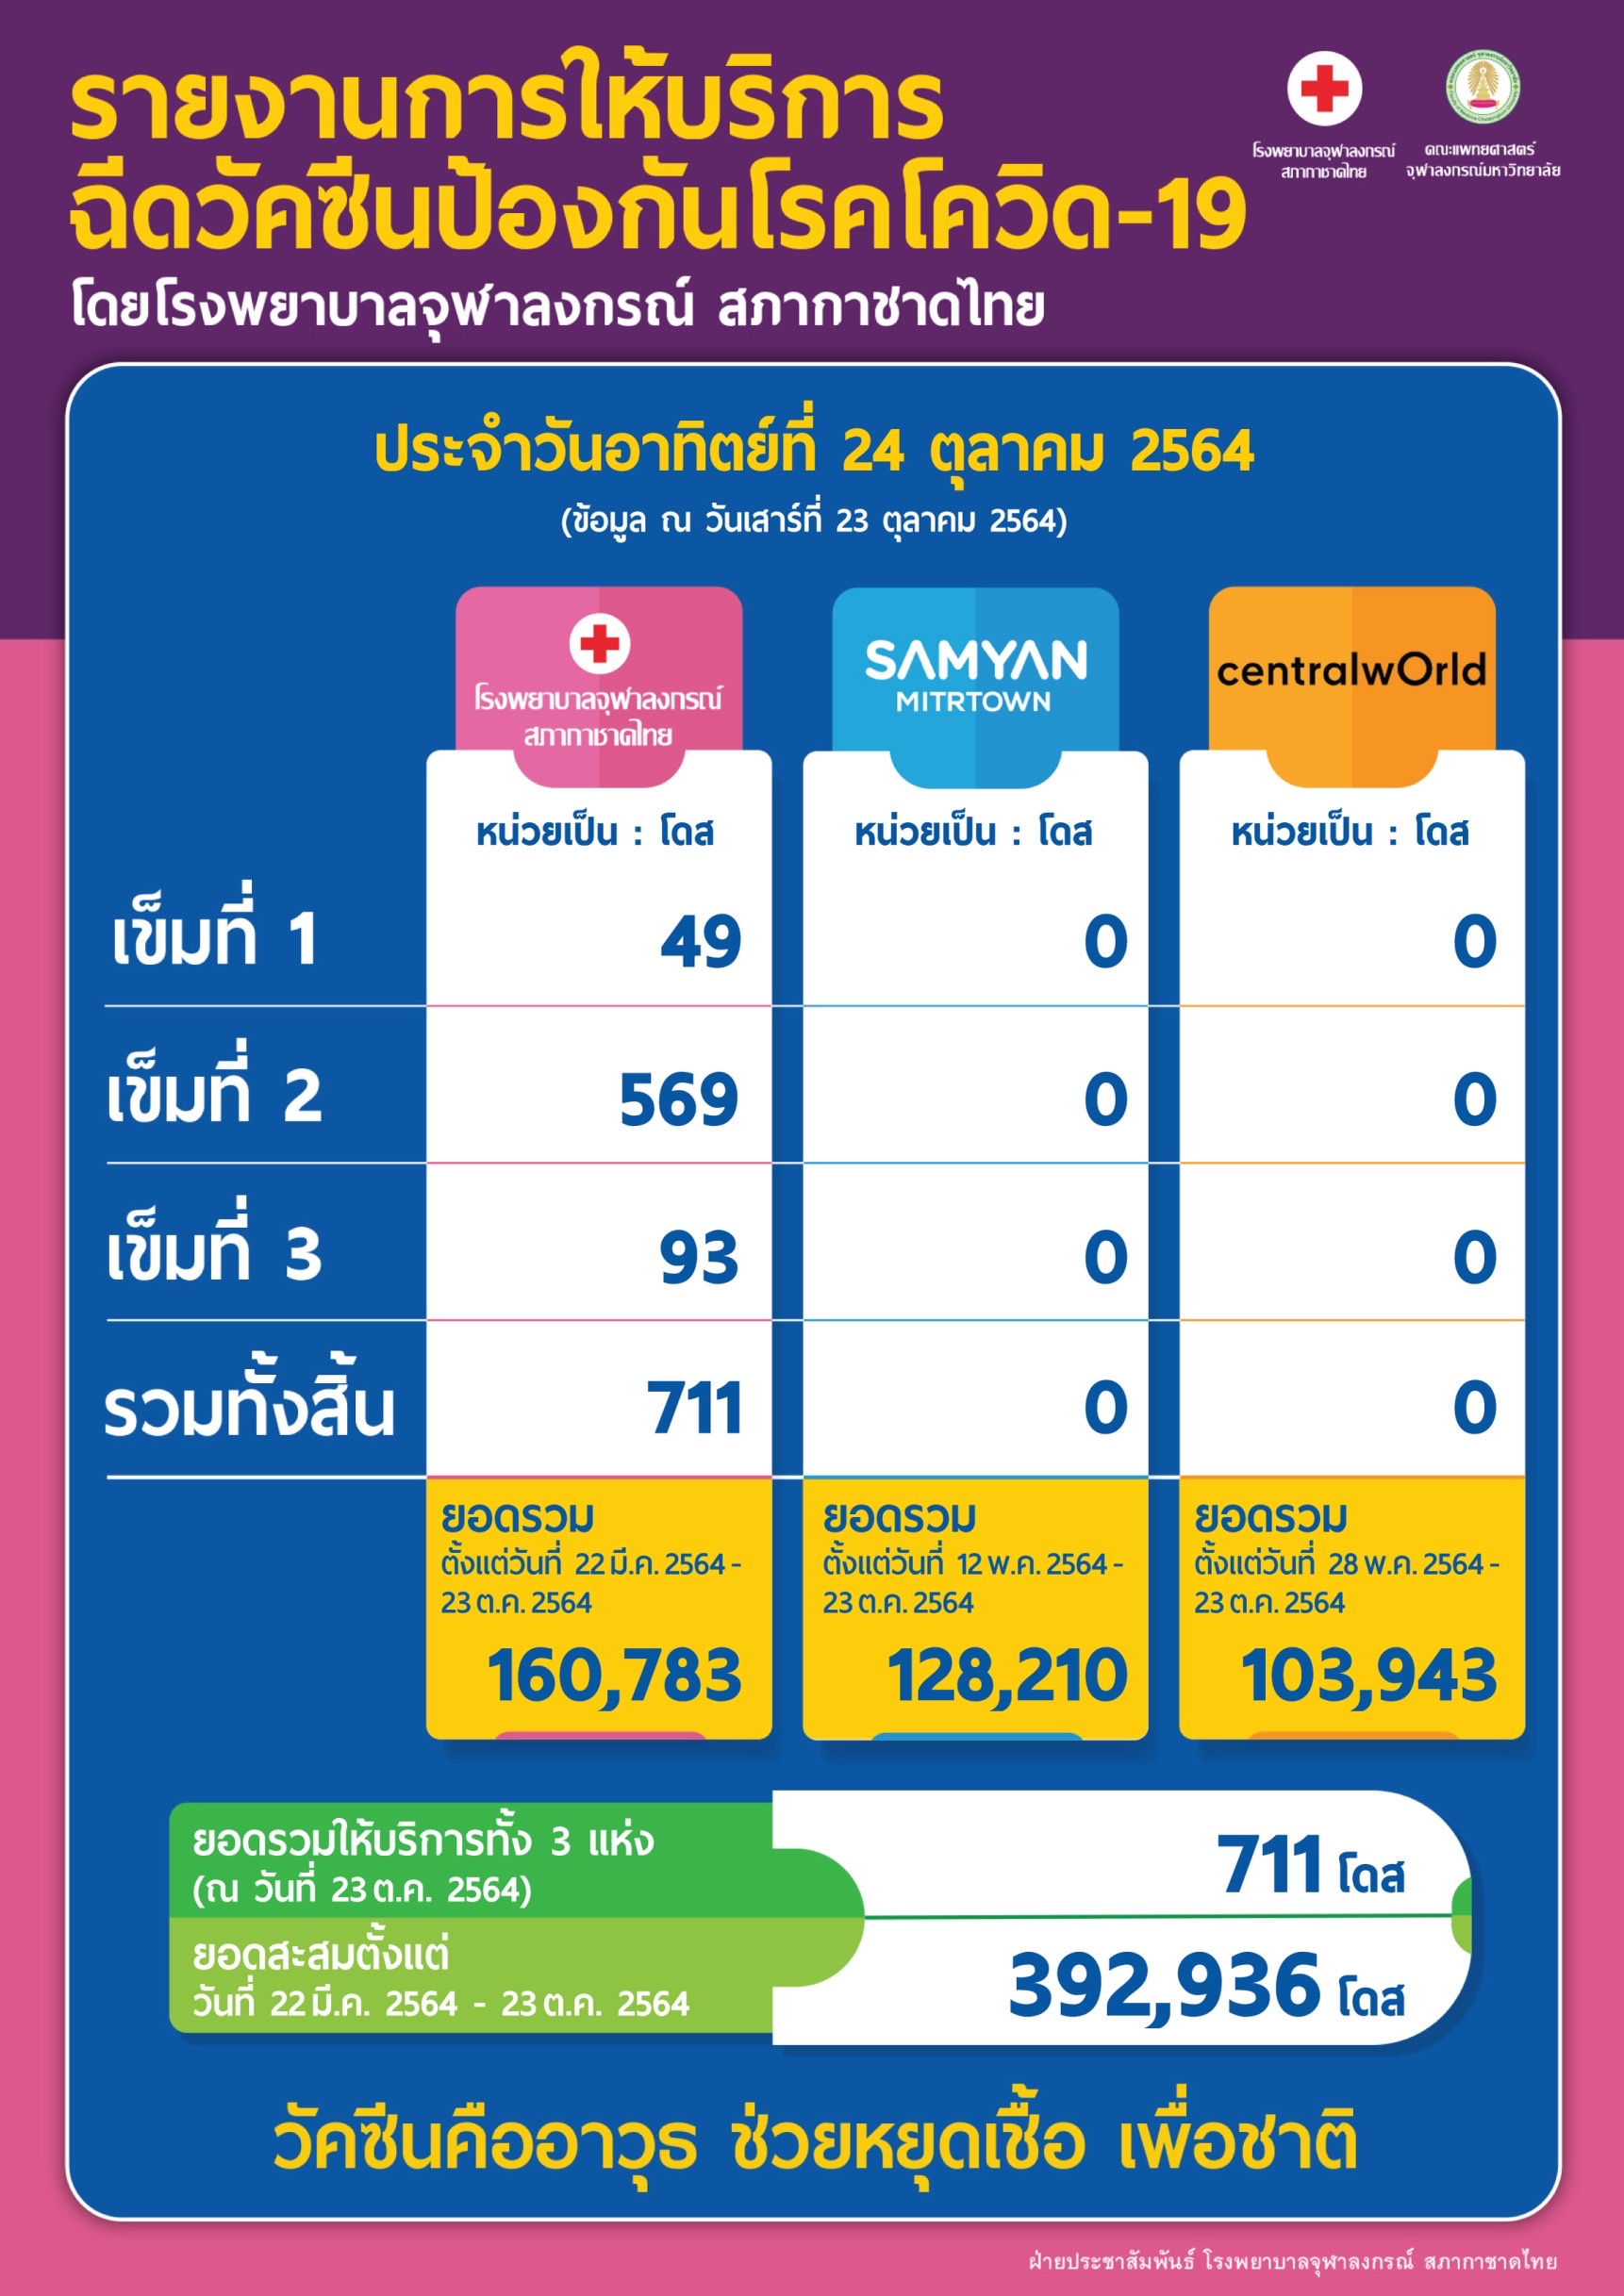 รายงานการให้บริการฉีดวัคซีนป้องกันโรคโควิด-19 โดยโรงพยาบาลจุฬาลงกรณ์ สภากาชาดไทย ประจำวันอาทิตย์ที่ 24 ตุลาคม 2564